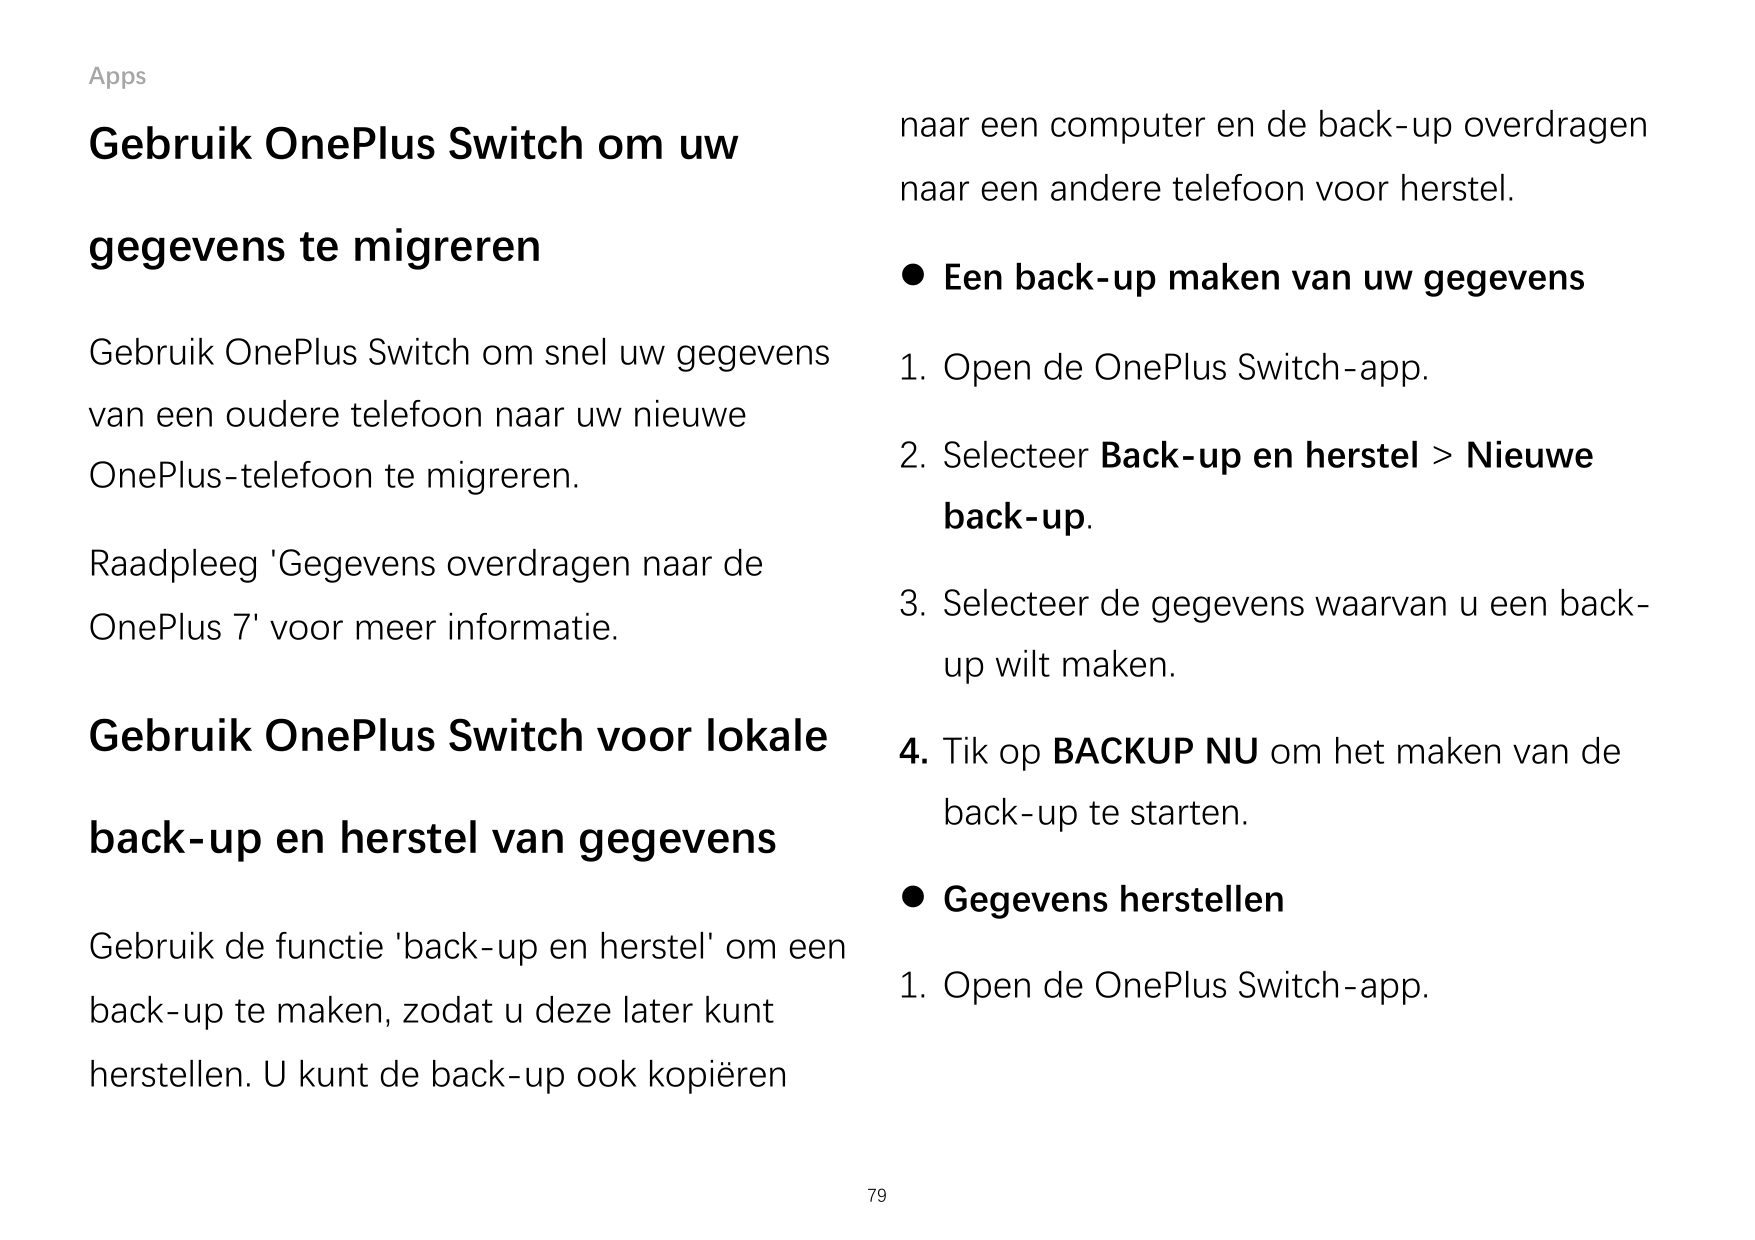 Appsnaar een computer en de back-up overdragenGebruik OnePlus Switch om uwnaar een andere telefoon voor herstel.gegevens te migr